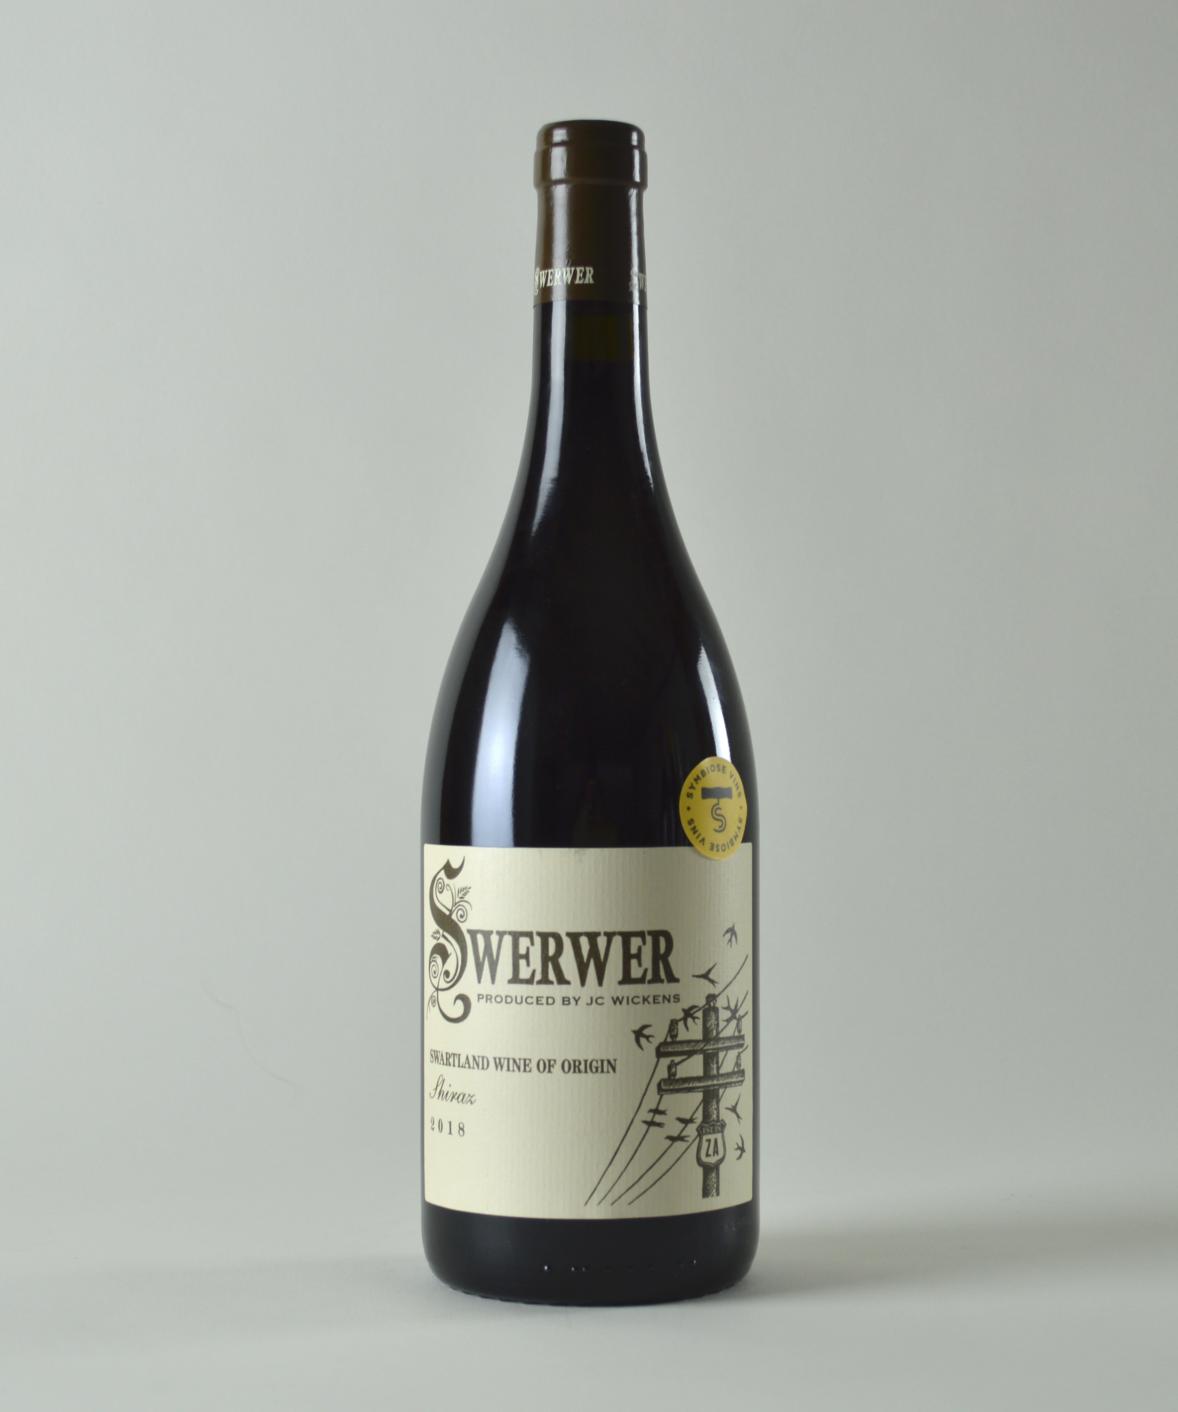 jc-wickens-werwer-shiraz-swartland-afrique-du-sud-symbiose-vins-importation-privee